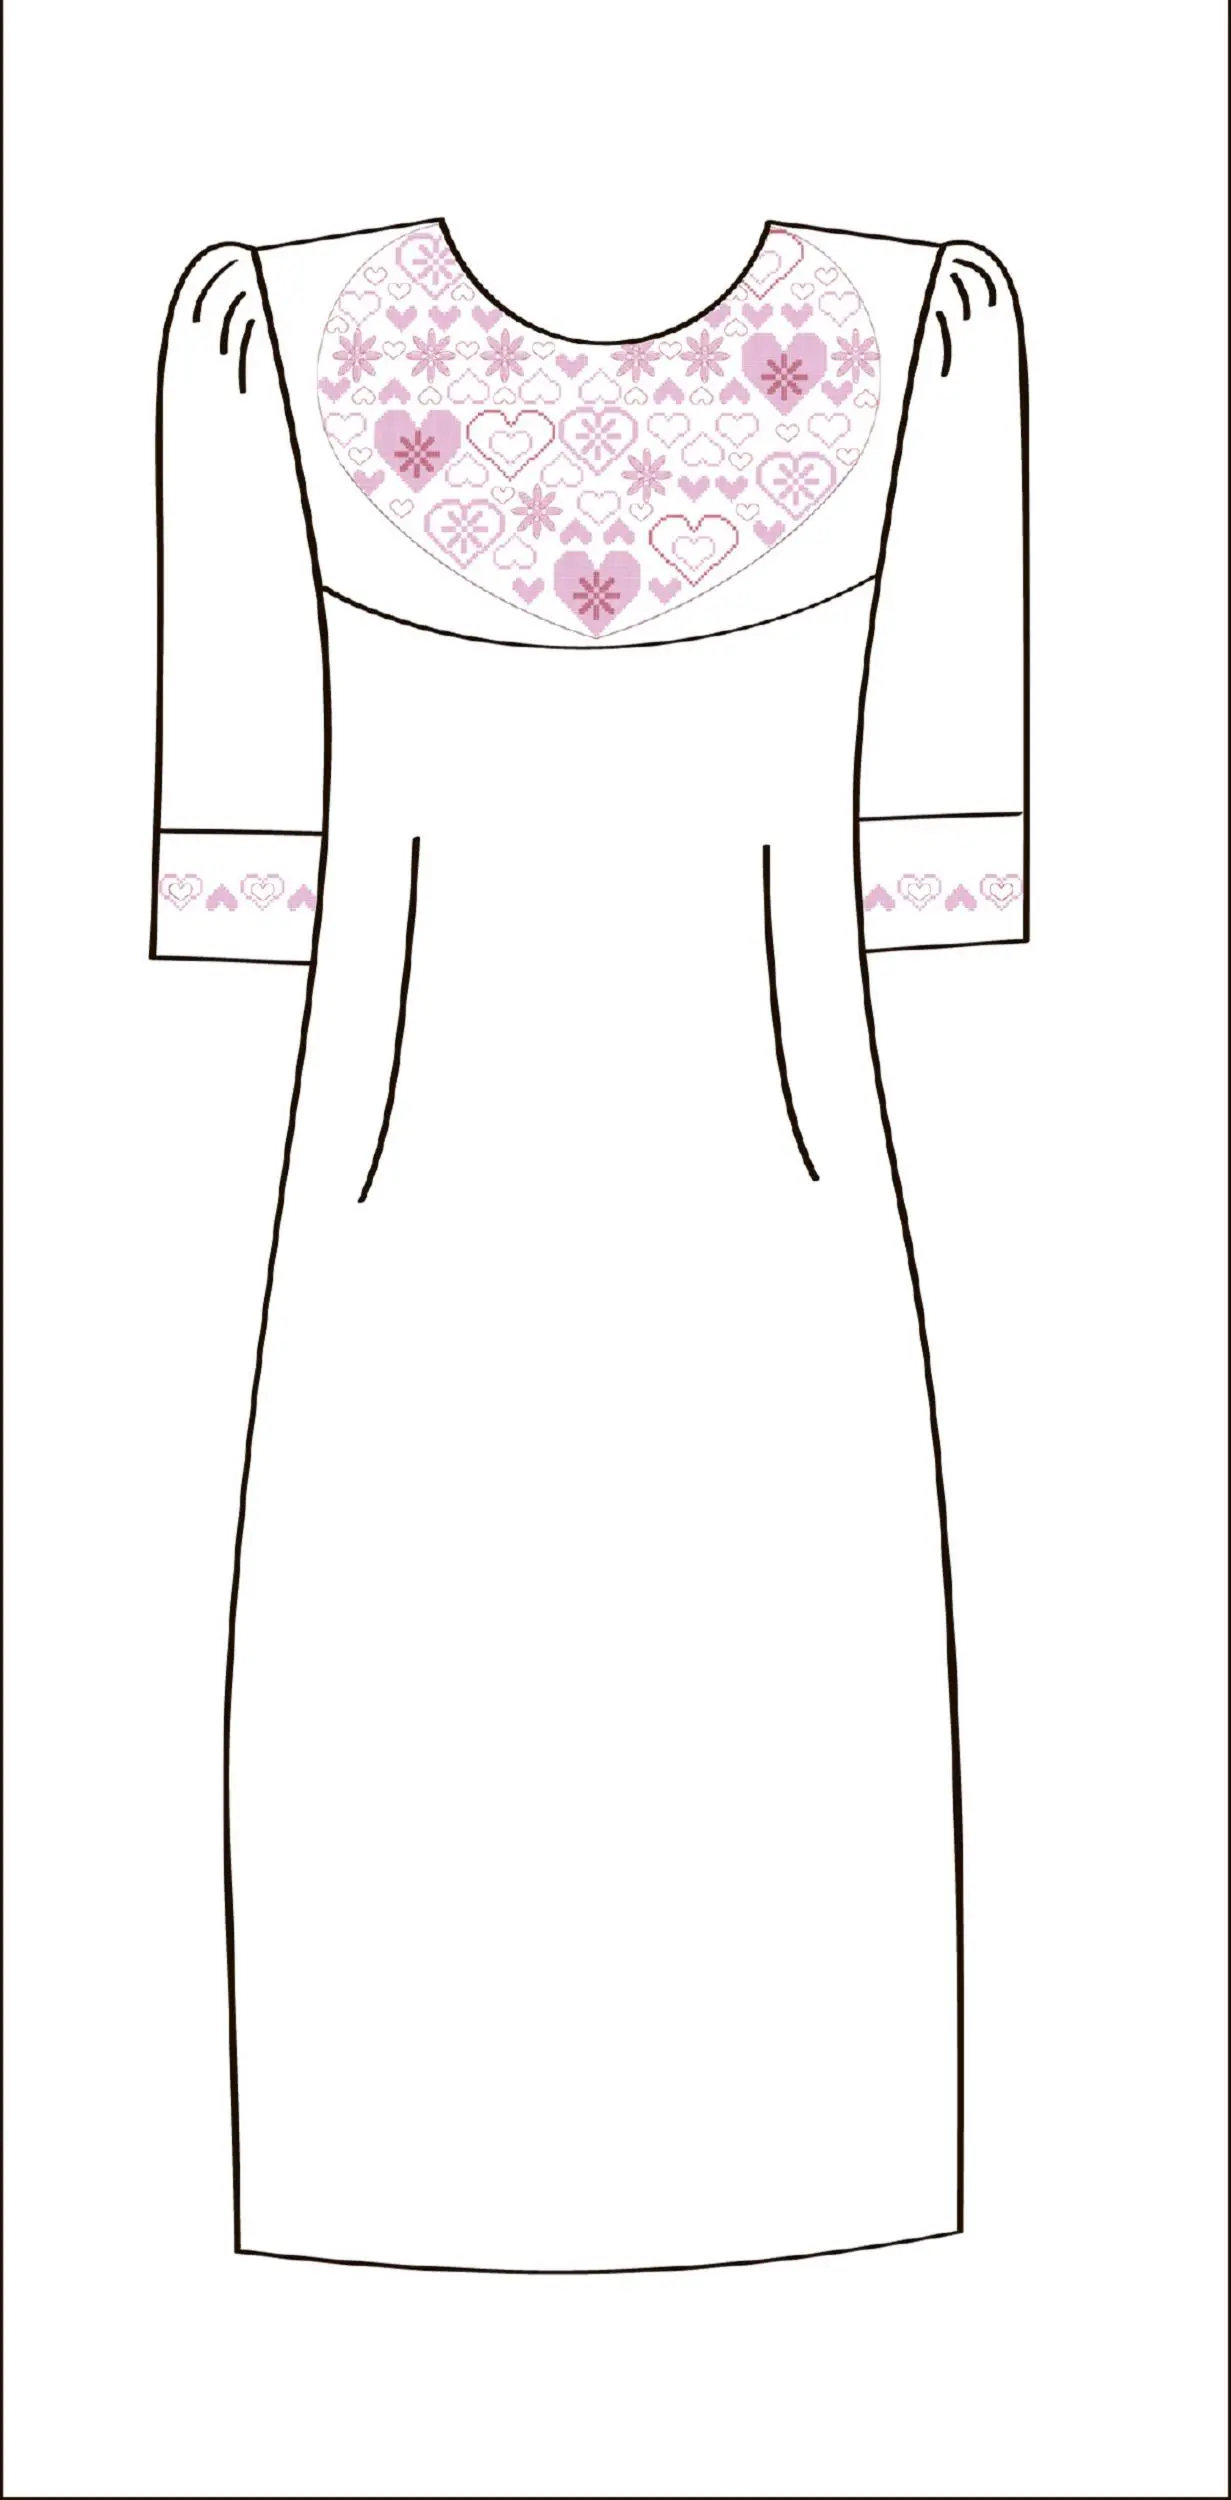 822-14/09 Плаття жіноче, біле, розмір 46